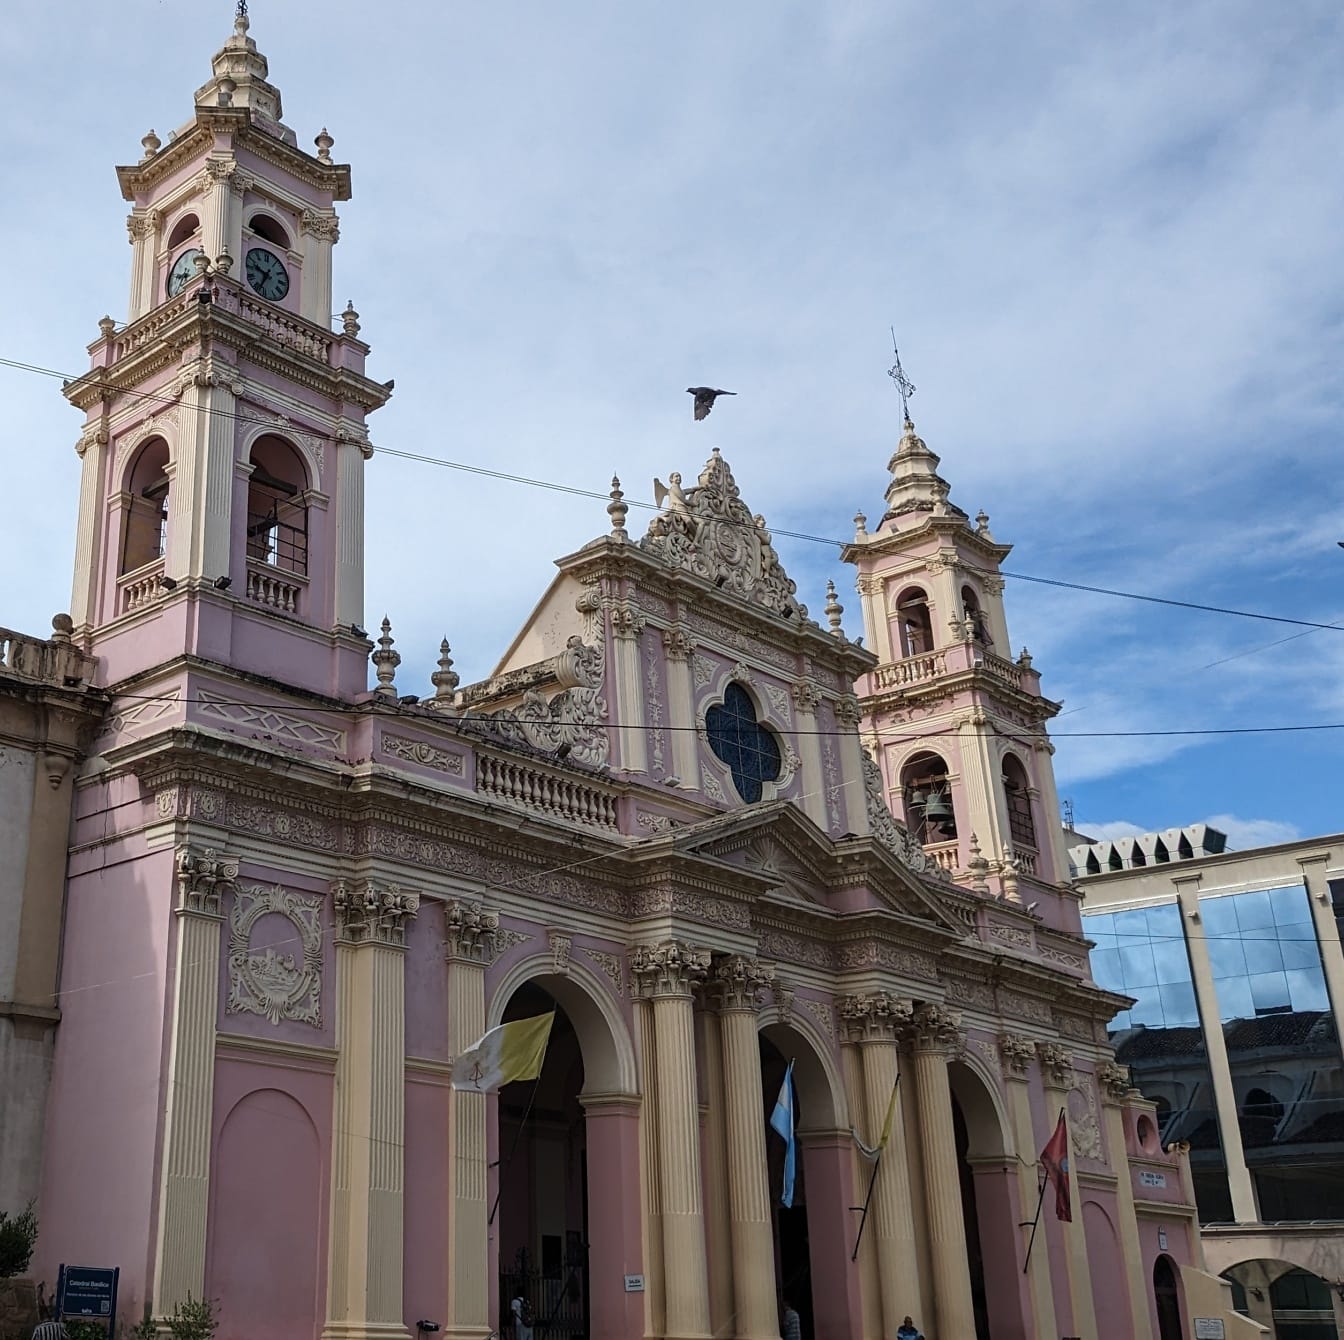 Catedral Basílica de Salta na Argentina em estilo arquitetônico colonial com cor rosada nas paredes